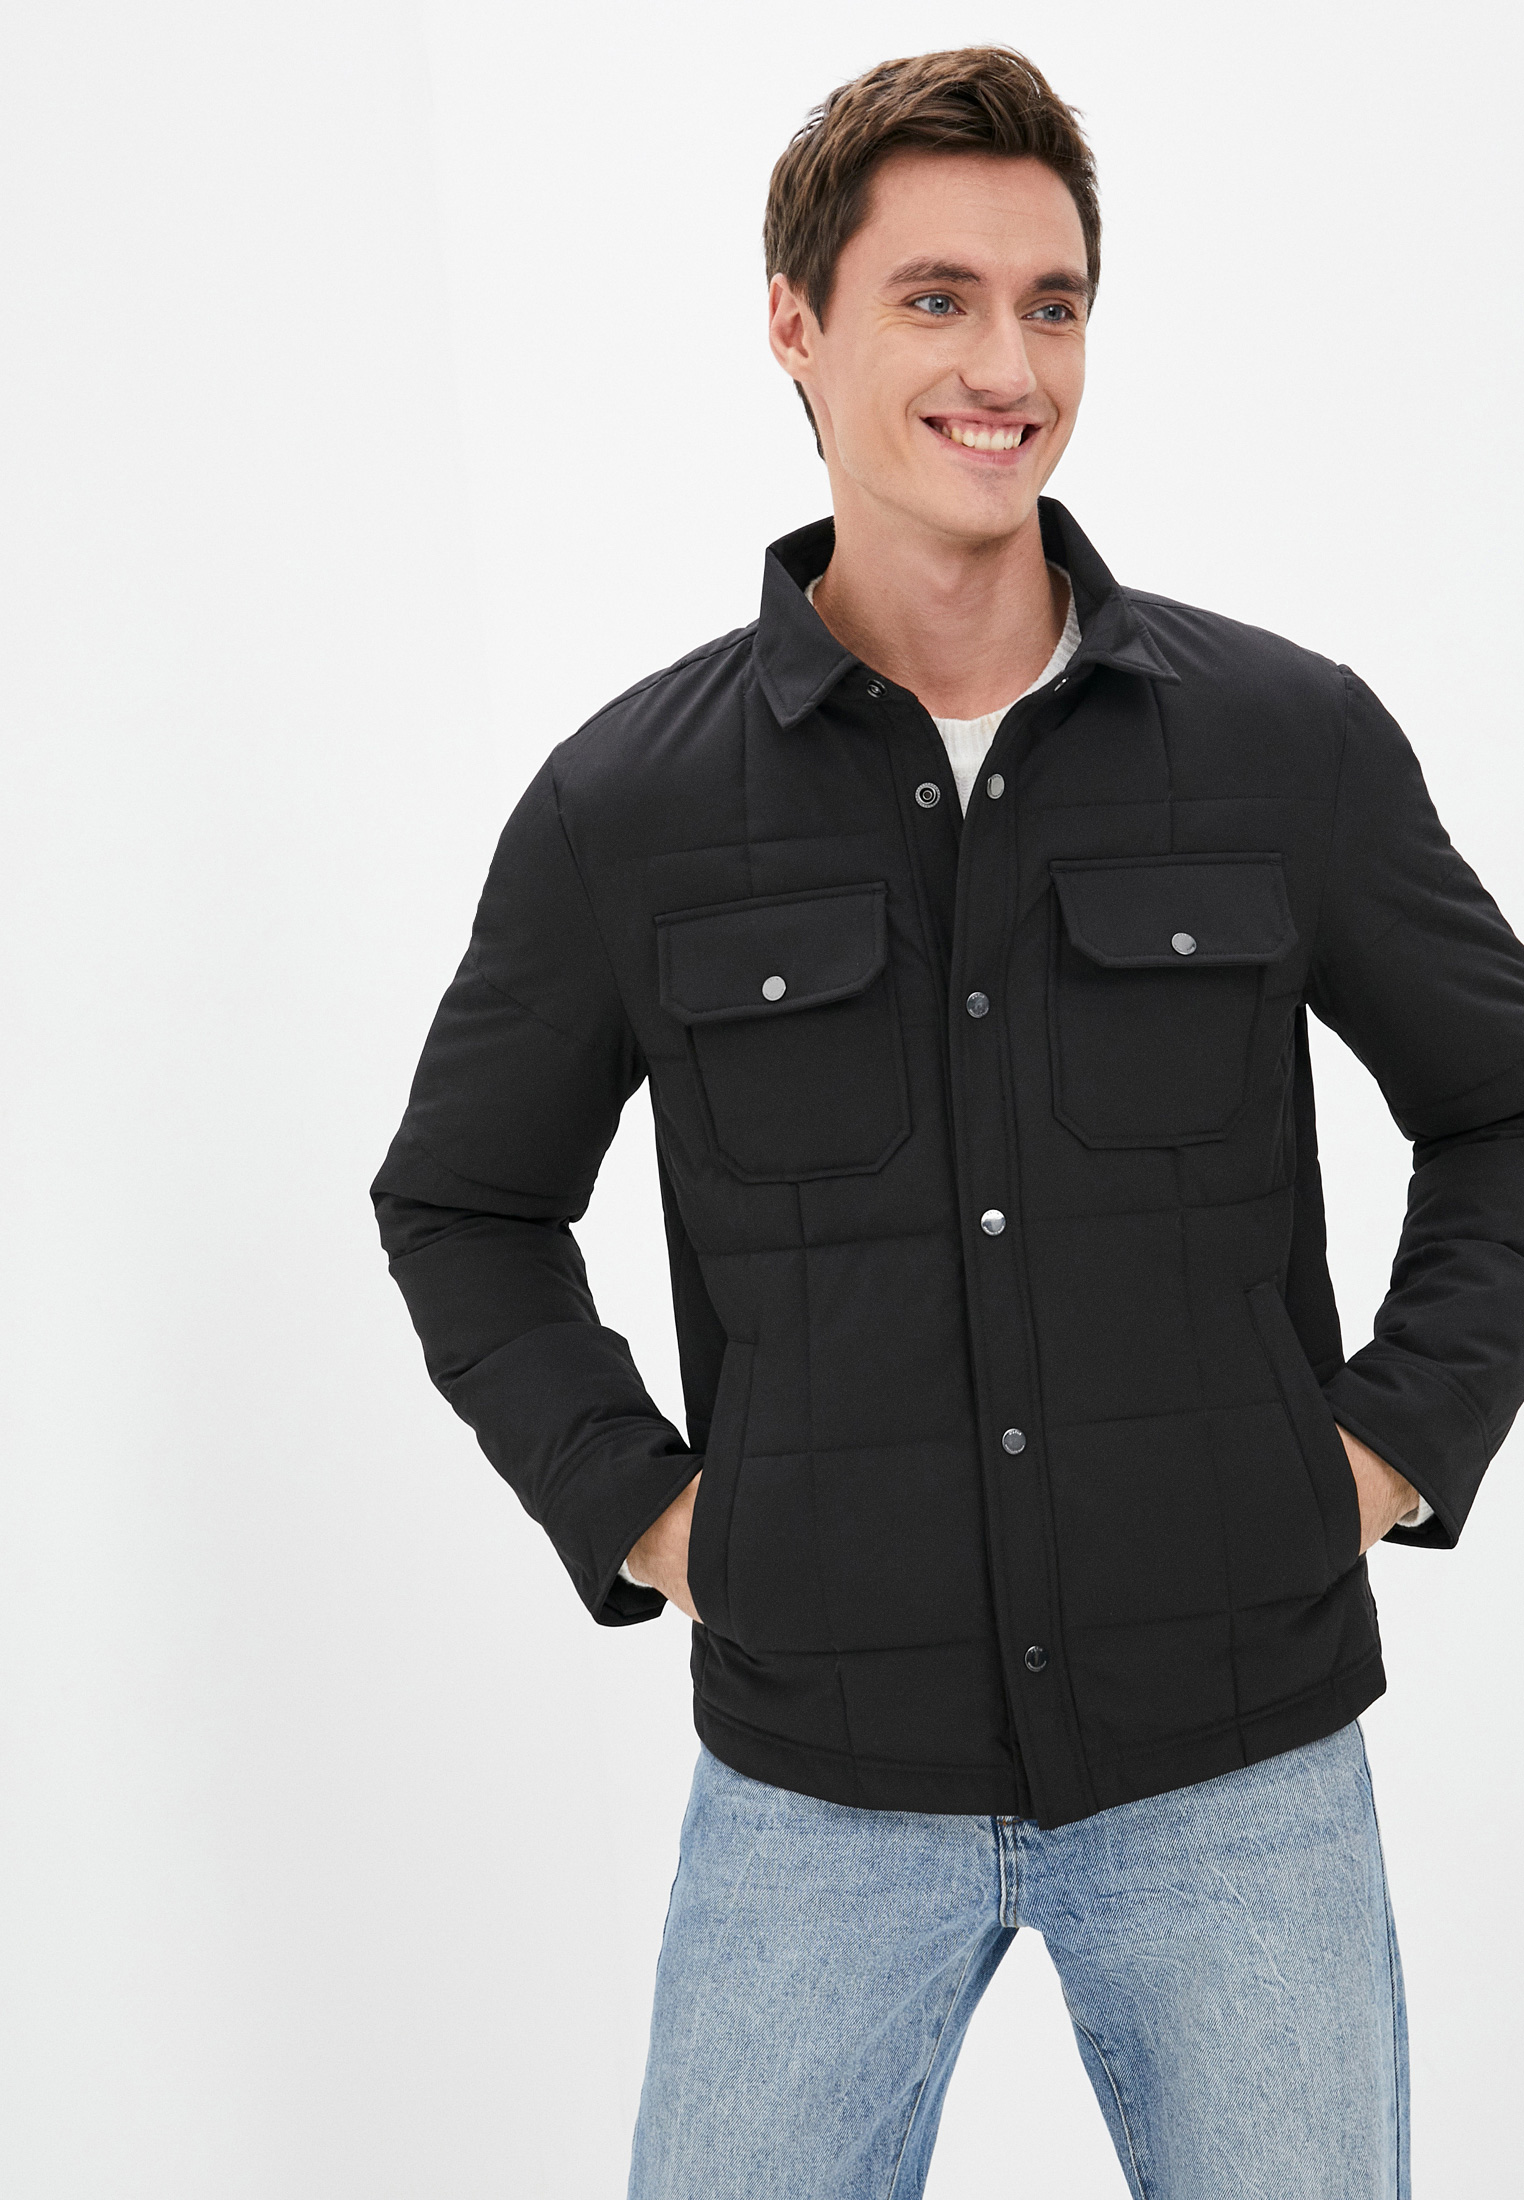 Куртка утепленная O'stin, цвет: черный, MP002XM0RGFR — купить в интернет-магазине Lamoda